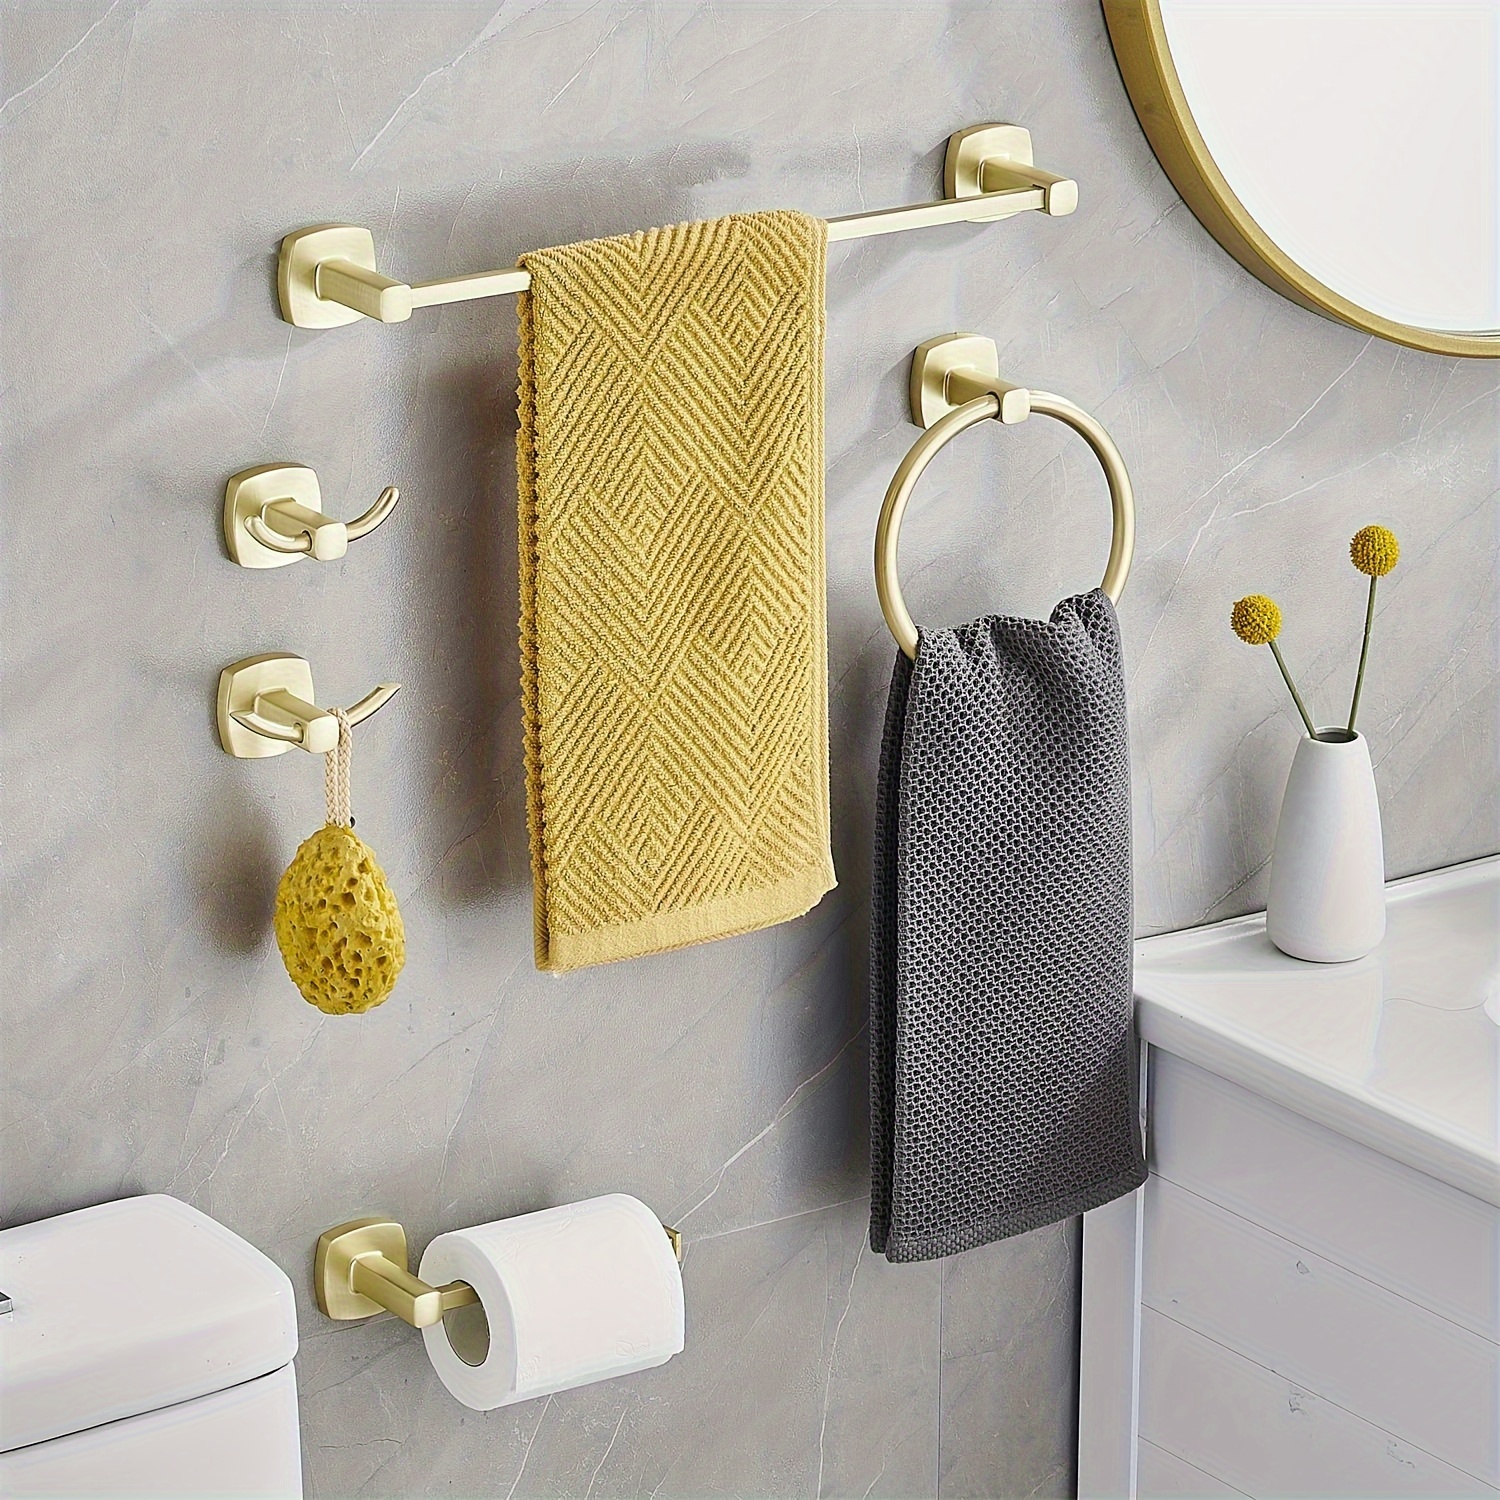  Cilee Toallero de baño dorado cepillado, 2 toalleros dobles de  16 pulgadas, toallero de baño para baño, soporte para toallas de baño,  montaje en pared de acero inoxidable : Herramientas y